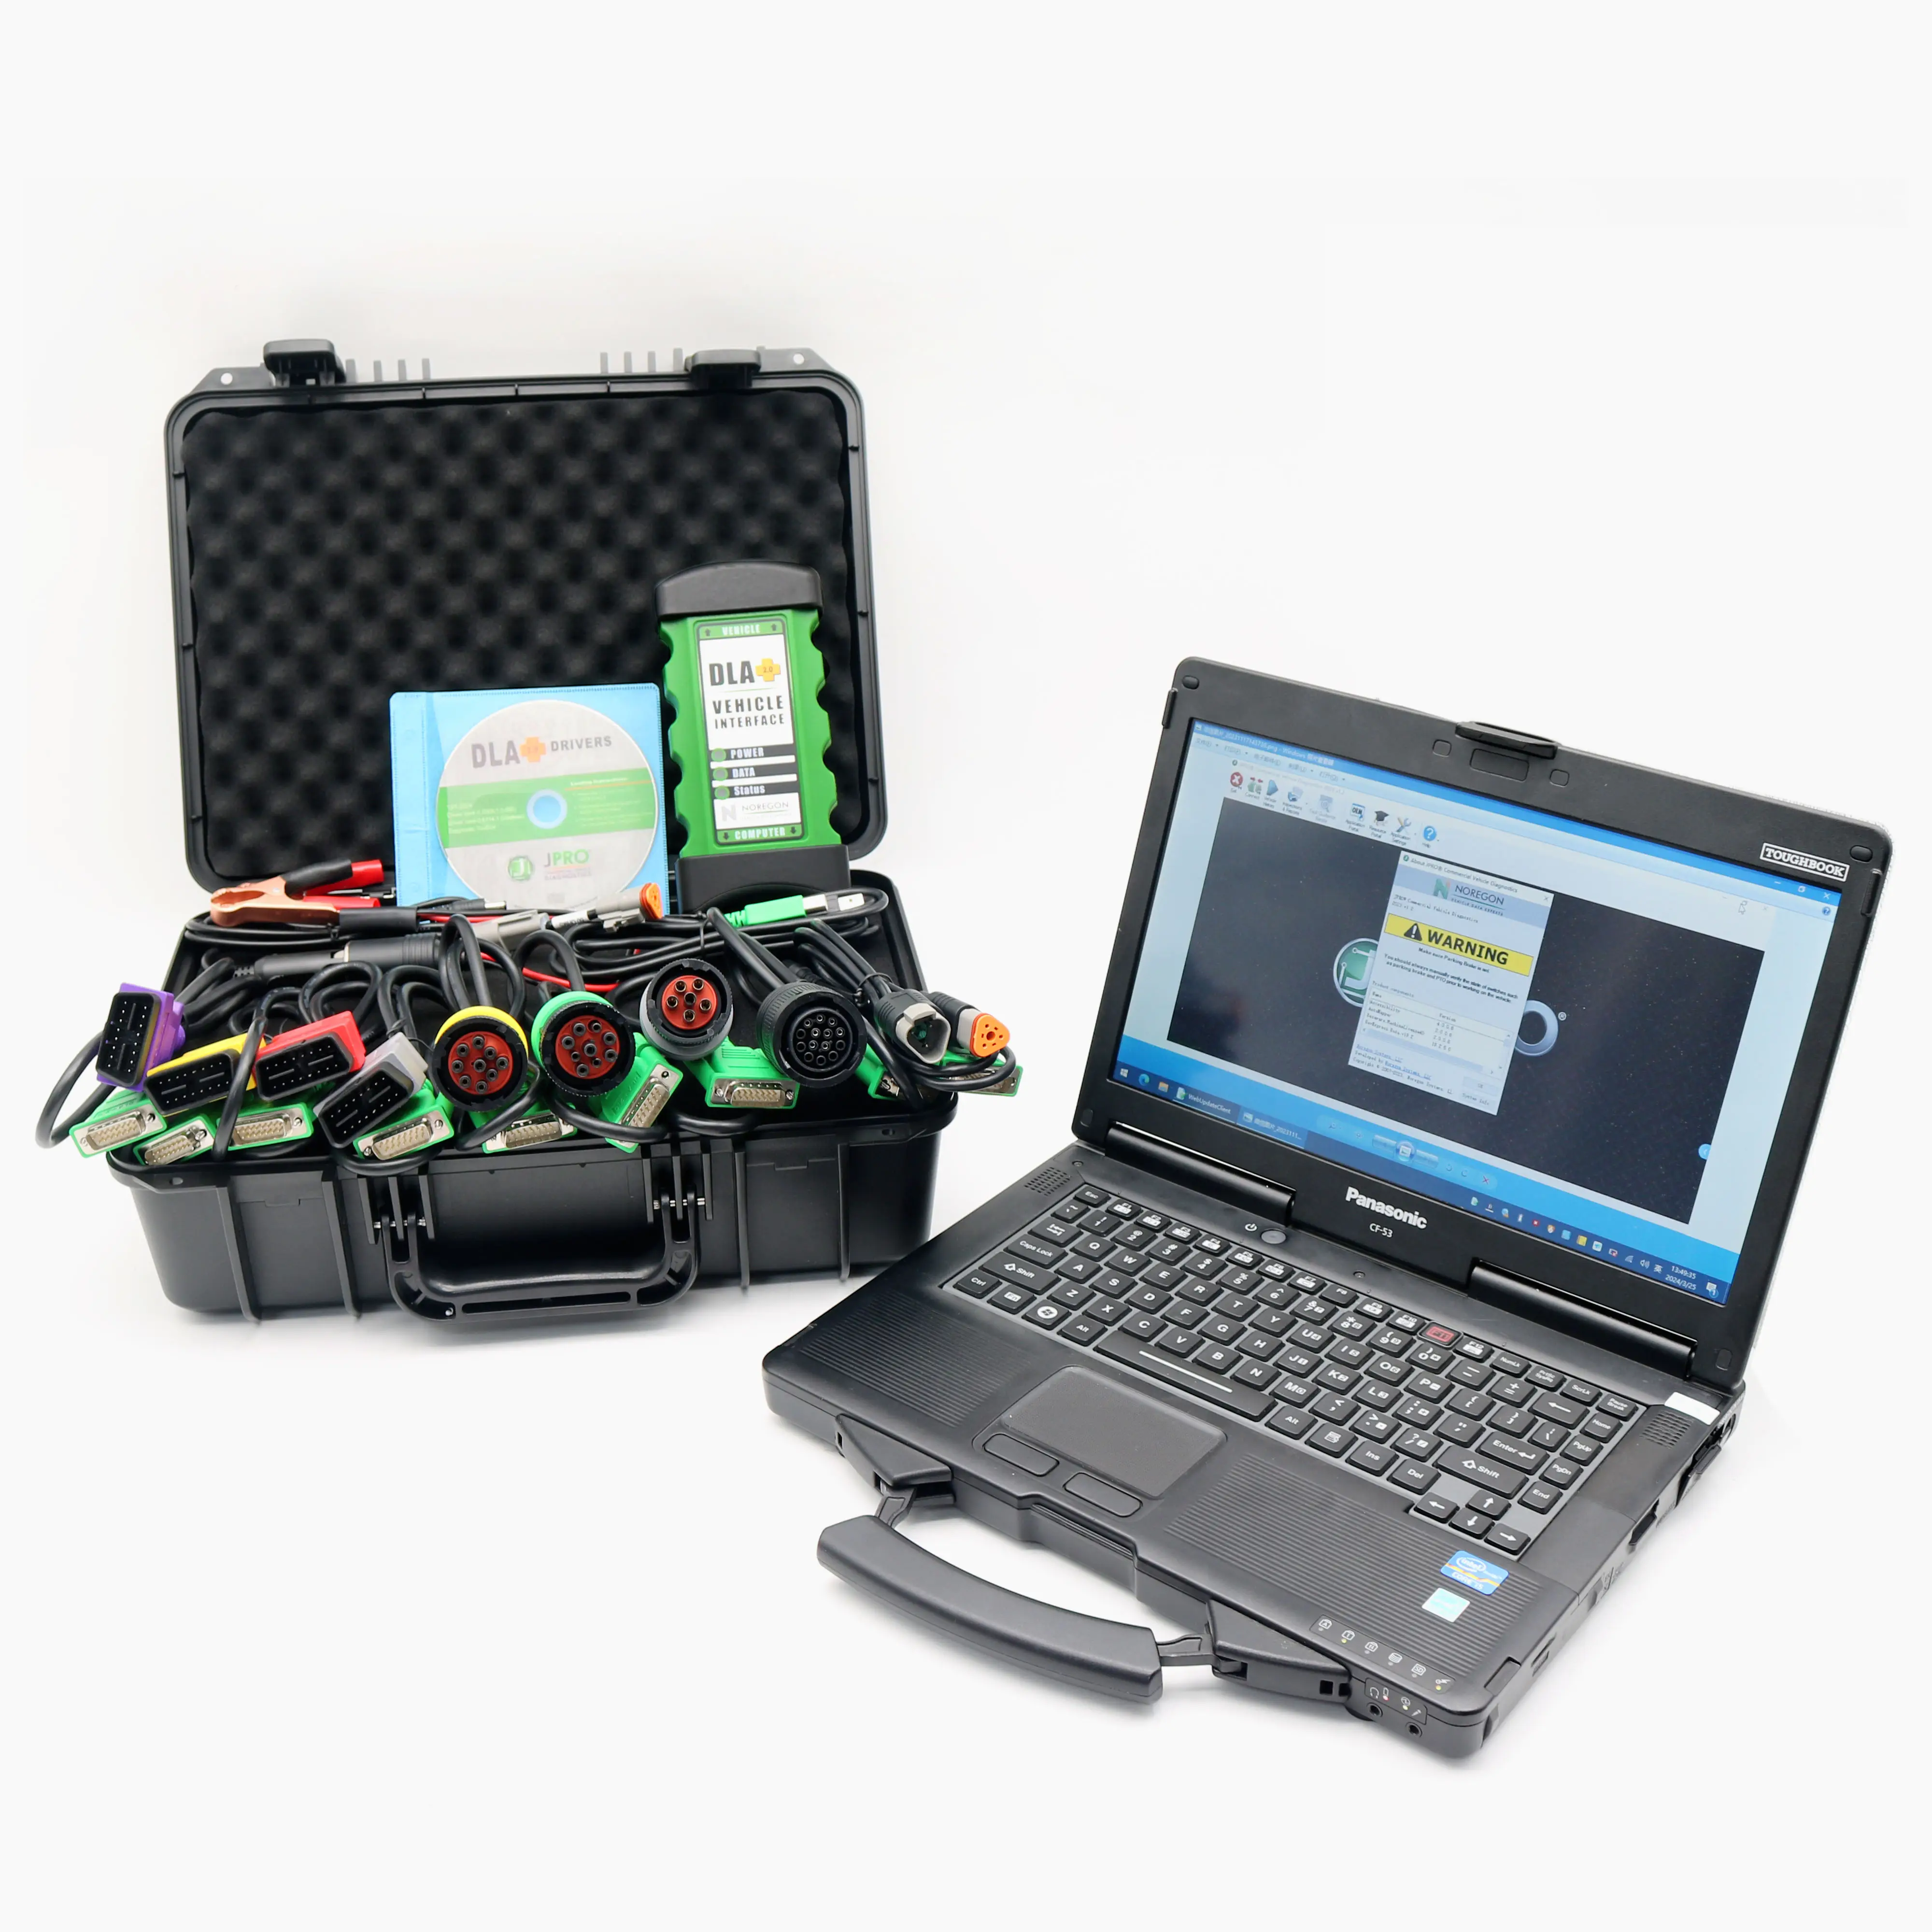 Клиент для OEM JPRO автомобильный диагностический инструмент адаптер DLA + 2,0 интерфейс дизельный V2019 программное обеспечение для тяжелых испытаний грузовиков